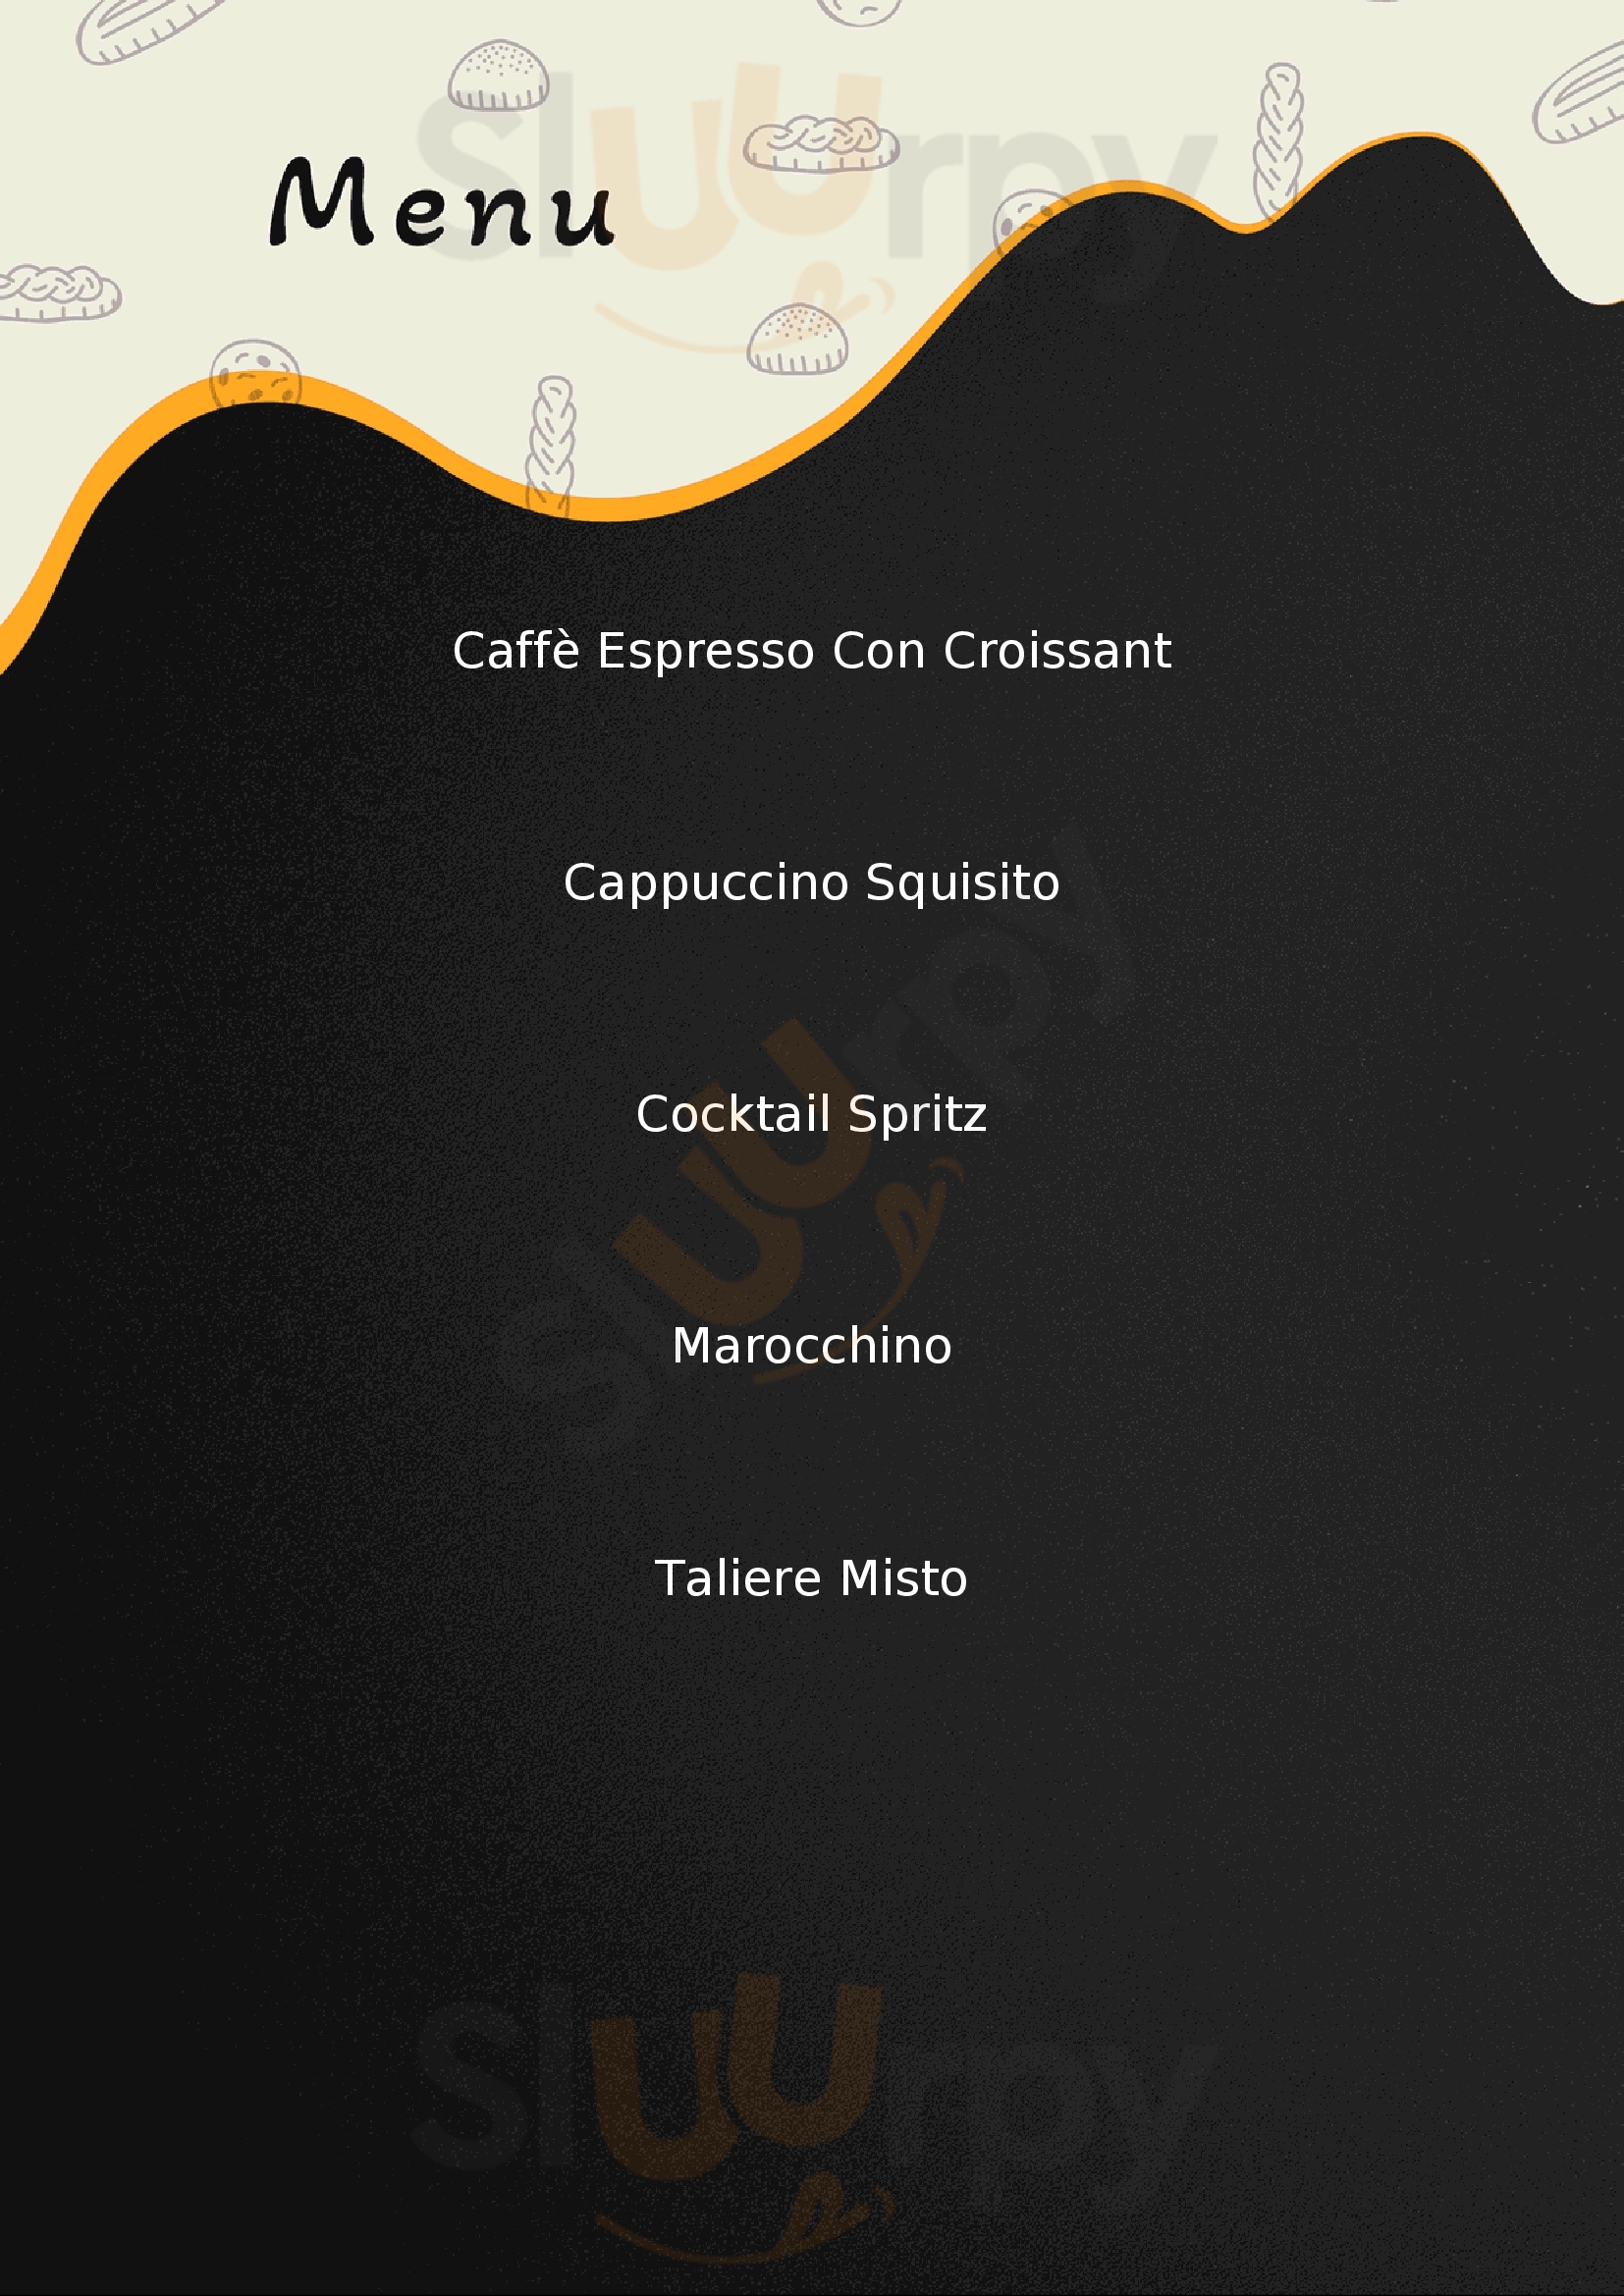 Caffe Della Musica Guspini menù 1 pagina